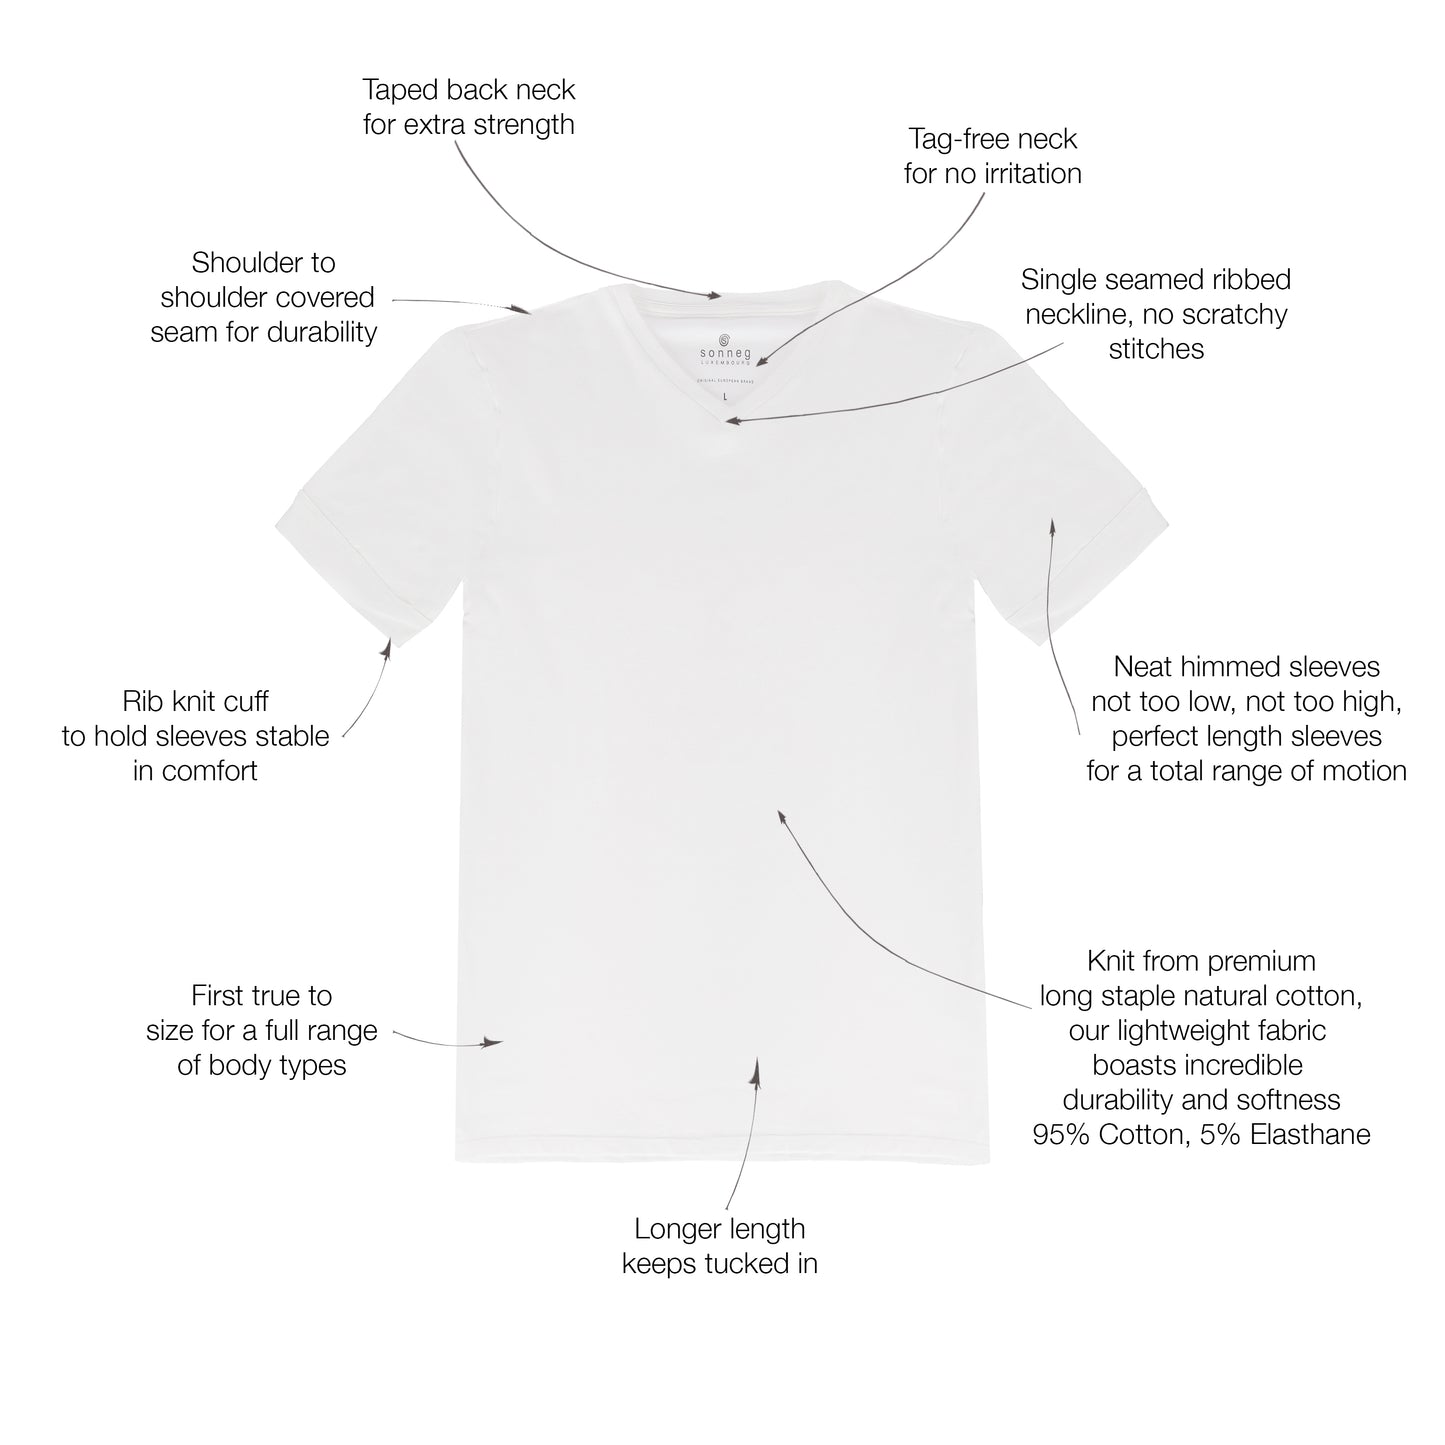 Weißes T-Shirt mit V-Ausschnitt für Herren – Packung mit 2 oder 4 T-Shirts